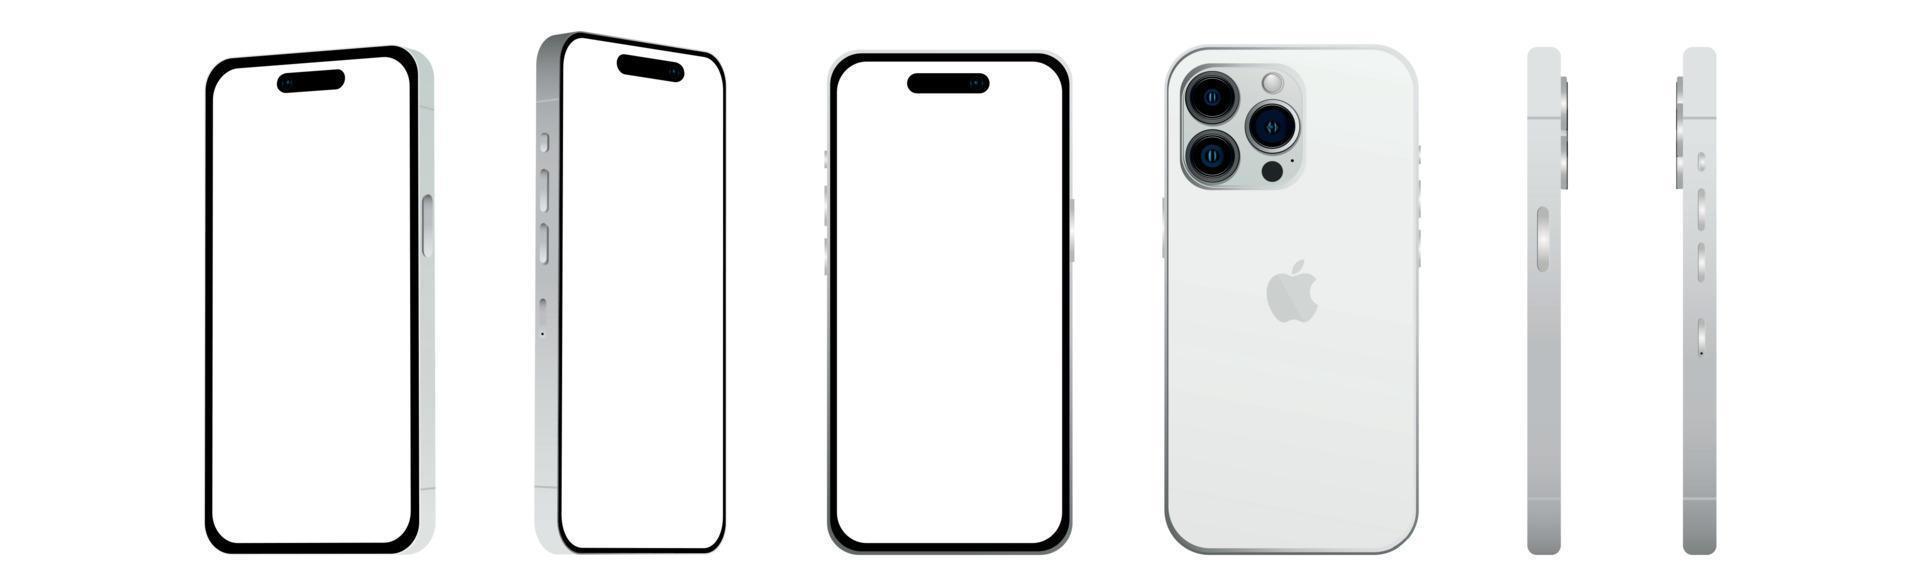 ensemble de 6 pcs différents angles, blanc pro smartphone apple iphone 14 modèles, nouveauté de l'industrie informatique, maquette pour la conception web sur fond blanc - image vectorielle vecteur